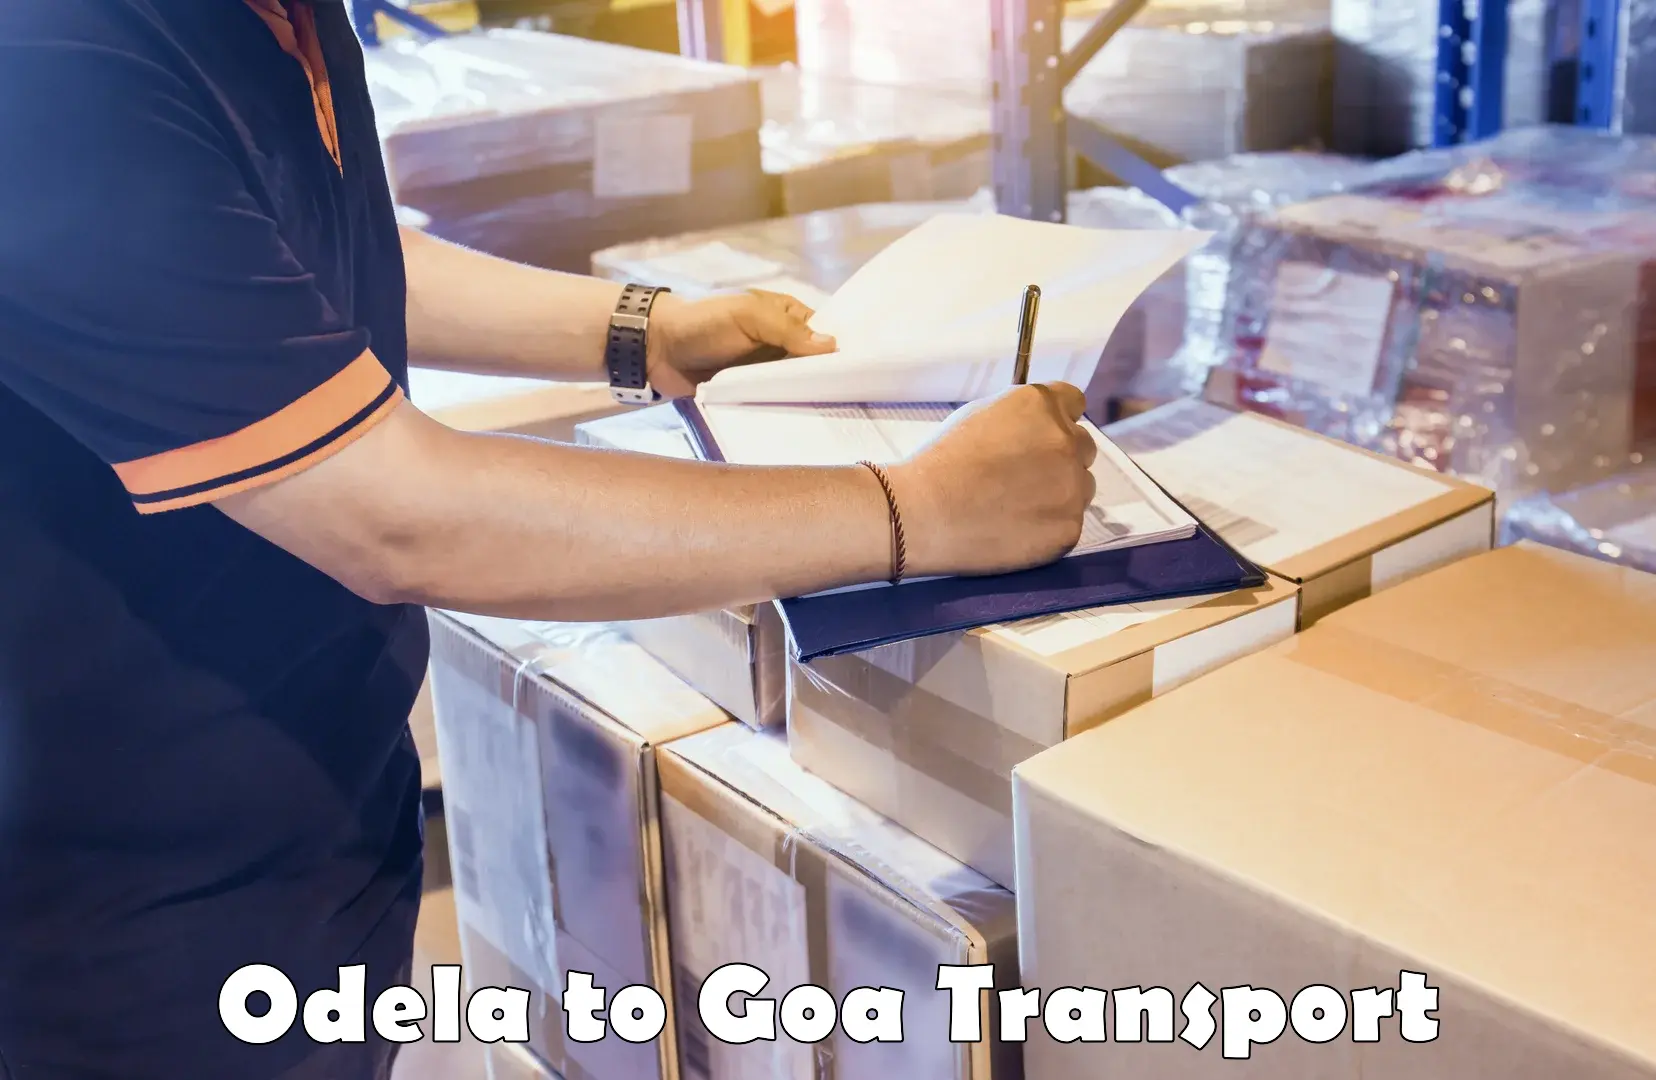 Truck transport companies in India Odela to Vasco da Gama